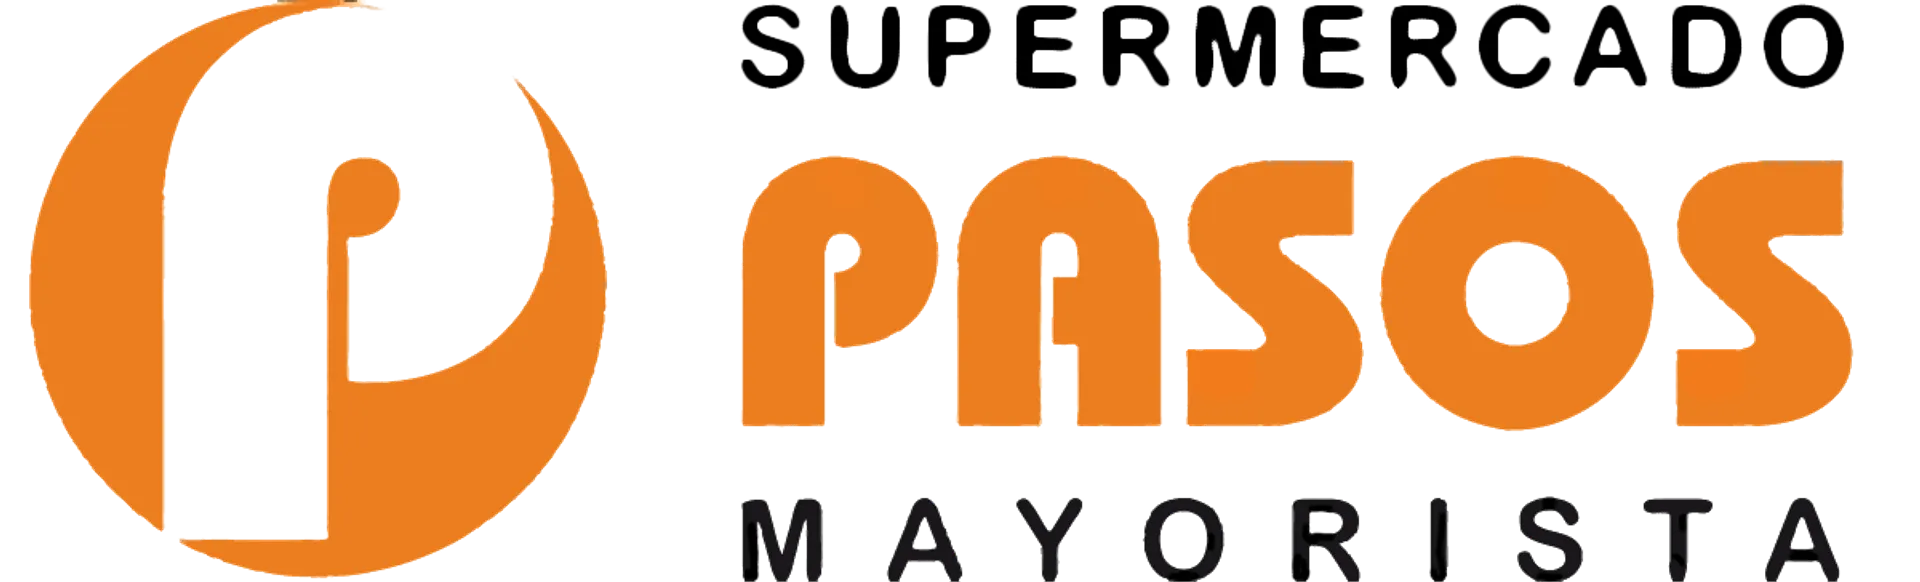 SUPERMERCADO PASOS logo